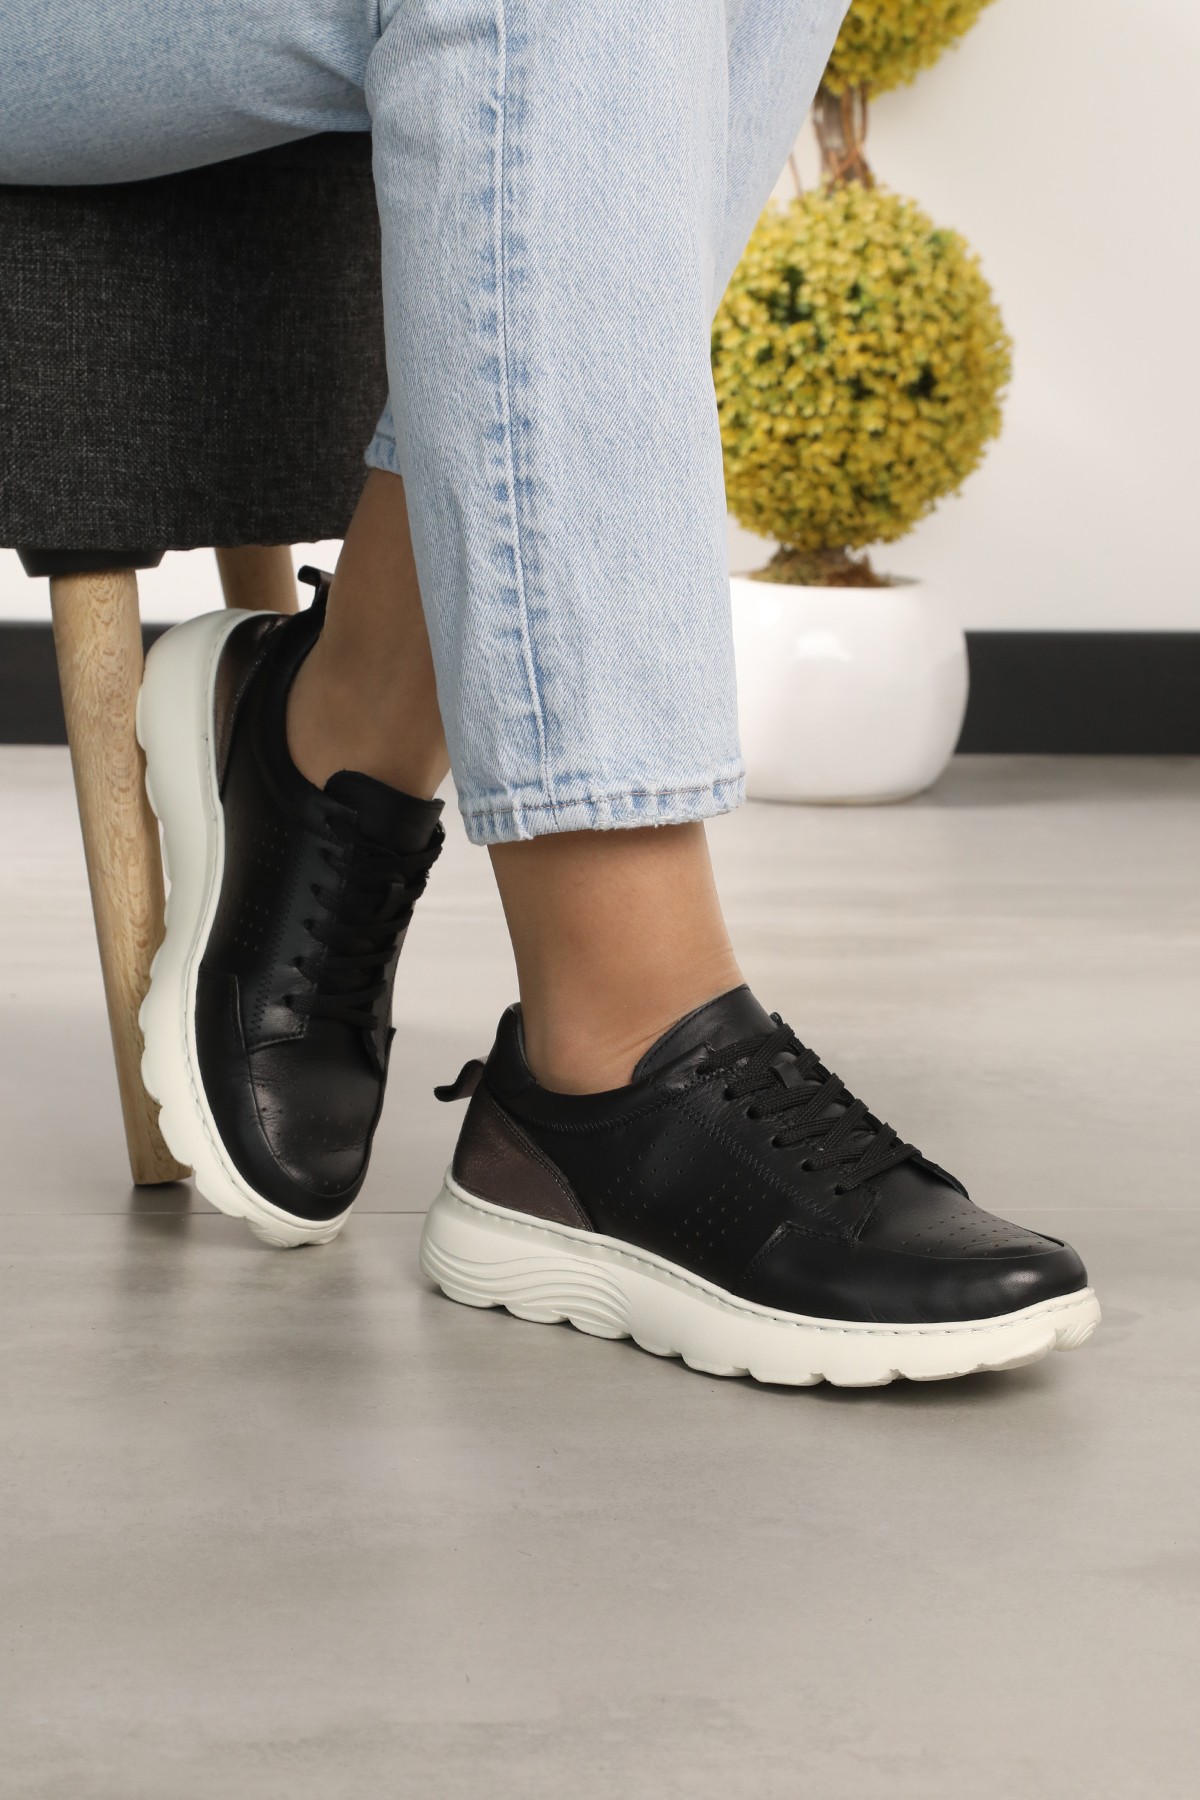 Cooliza Hakiki Deri Renkli Bağcıklı Günlük Rahat Kadın Yürüyüş Spor Ayakkabı - Siyah Beyaz